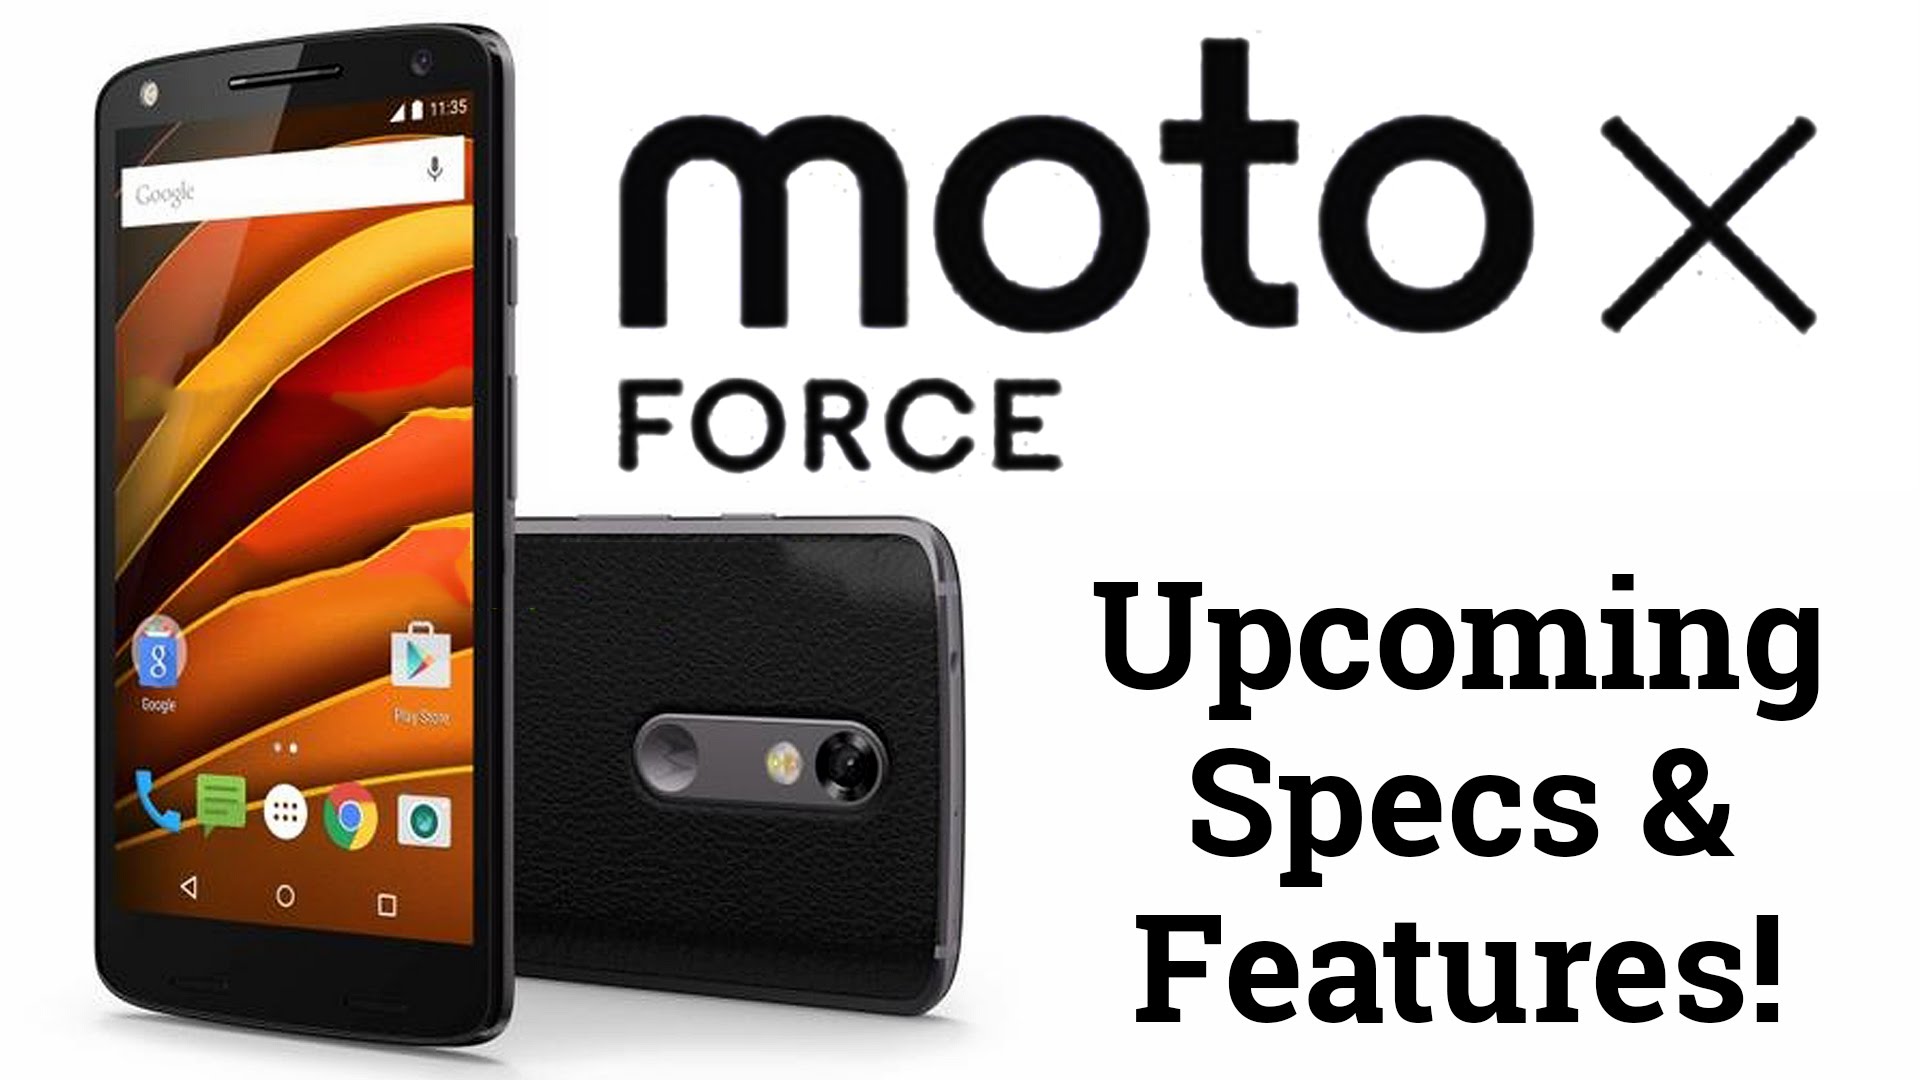 الهاتف الجديد من شركة موتورولا Moto X Force